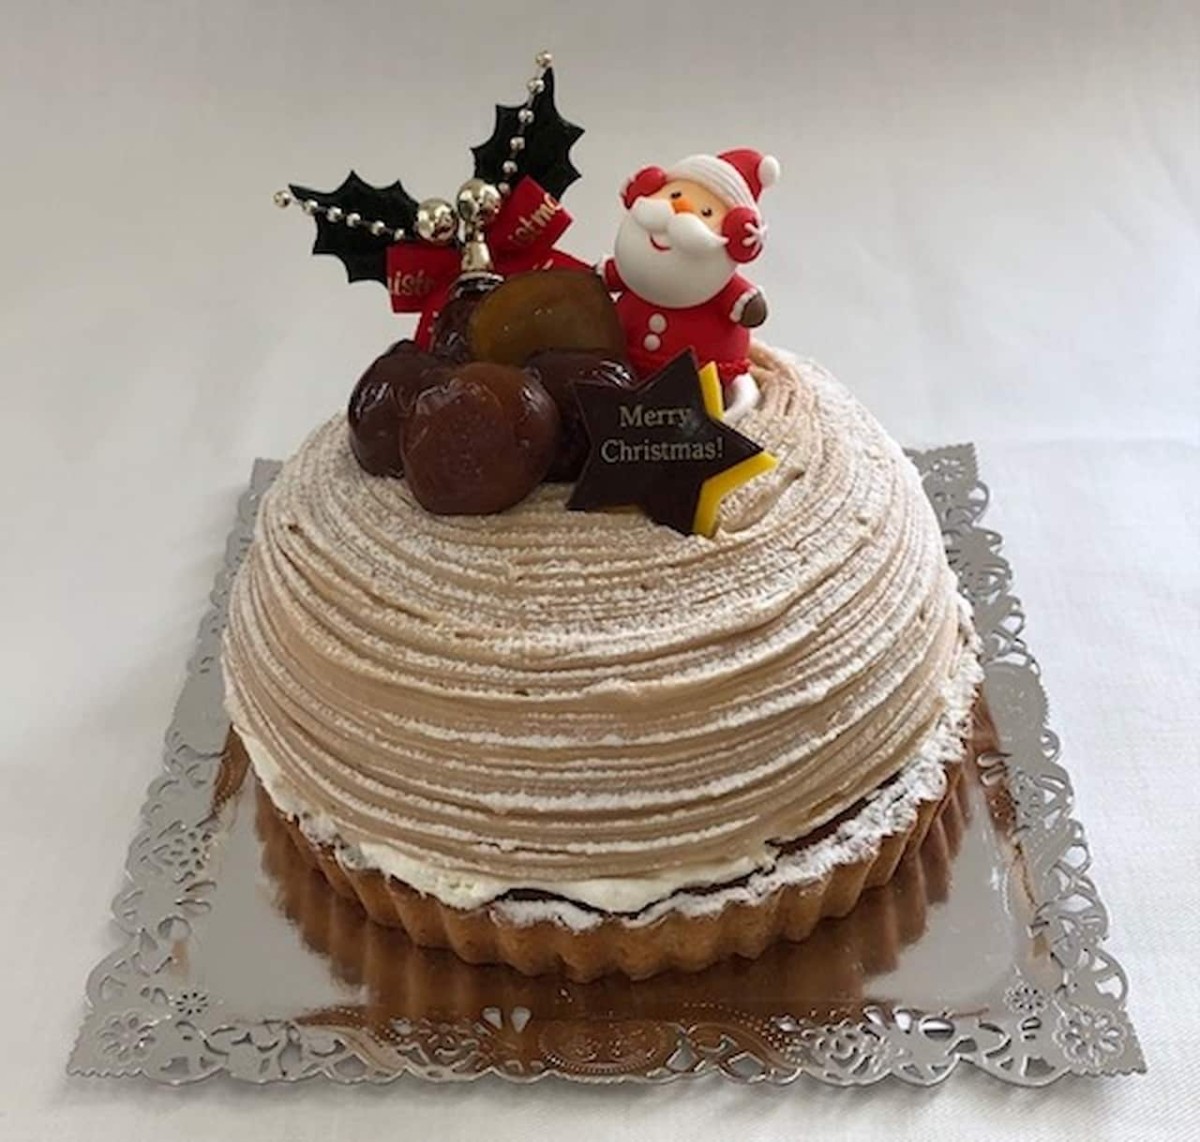 鳥取県米子市にある『Blancheur』で販売しているクリスマスケーキ